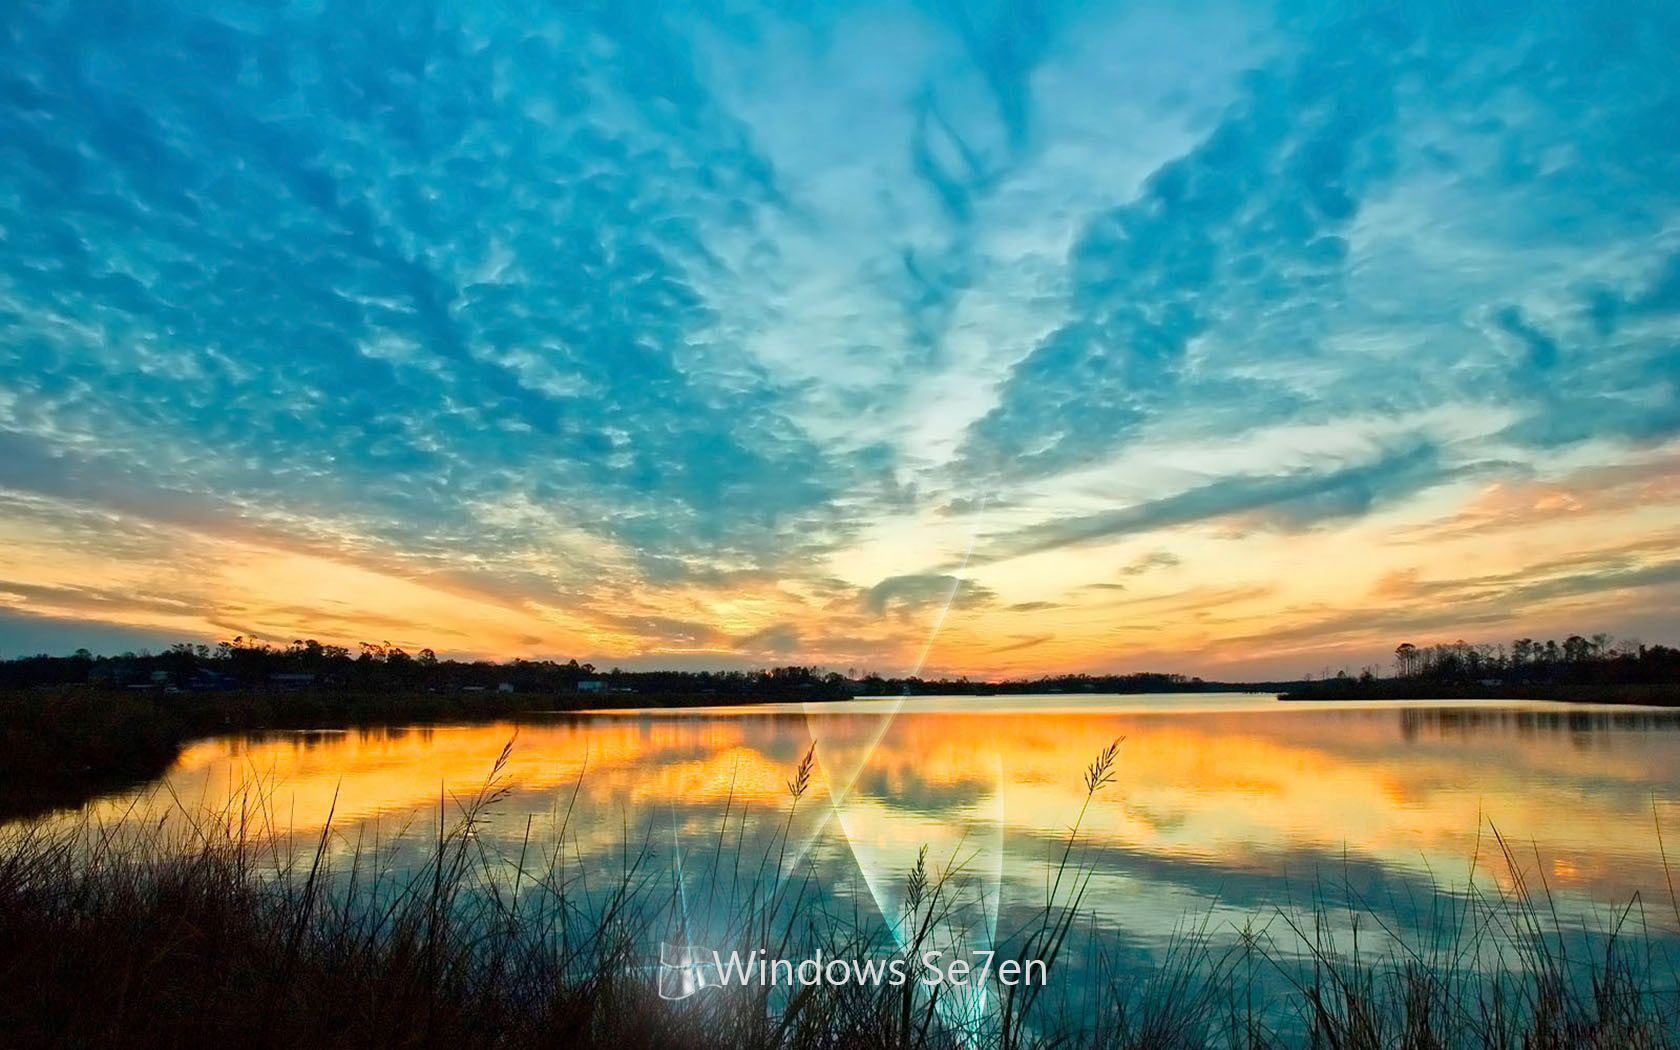 Desktop Wallpaper Gallery Windows 7 Windows 7 64 bit HD